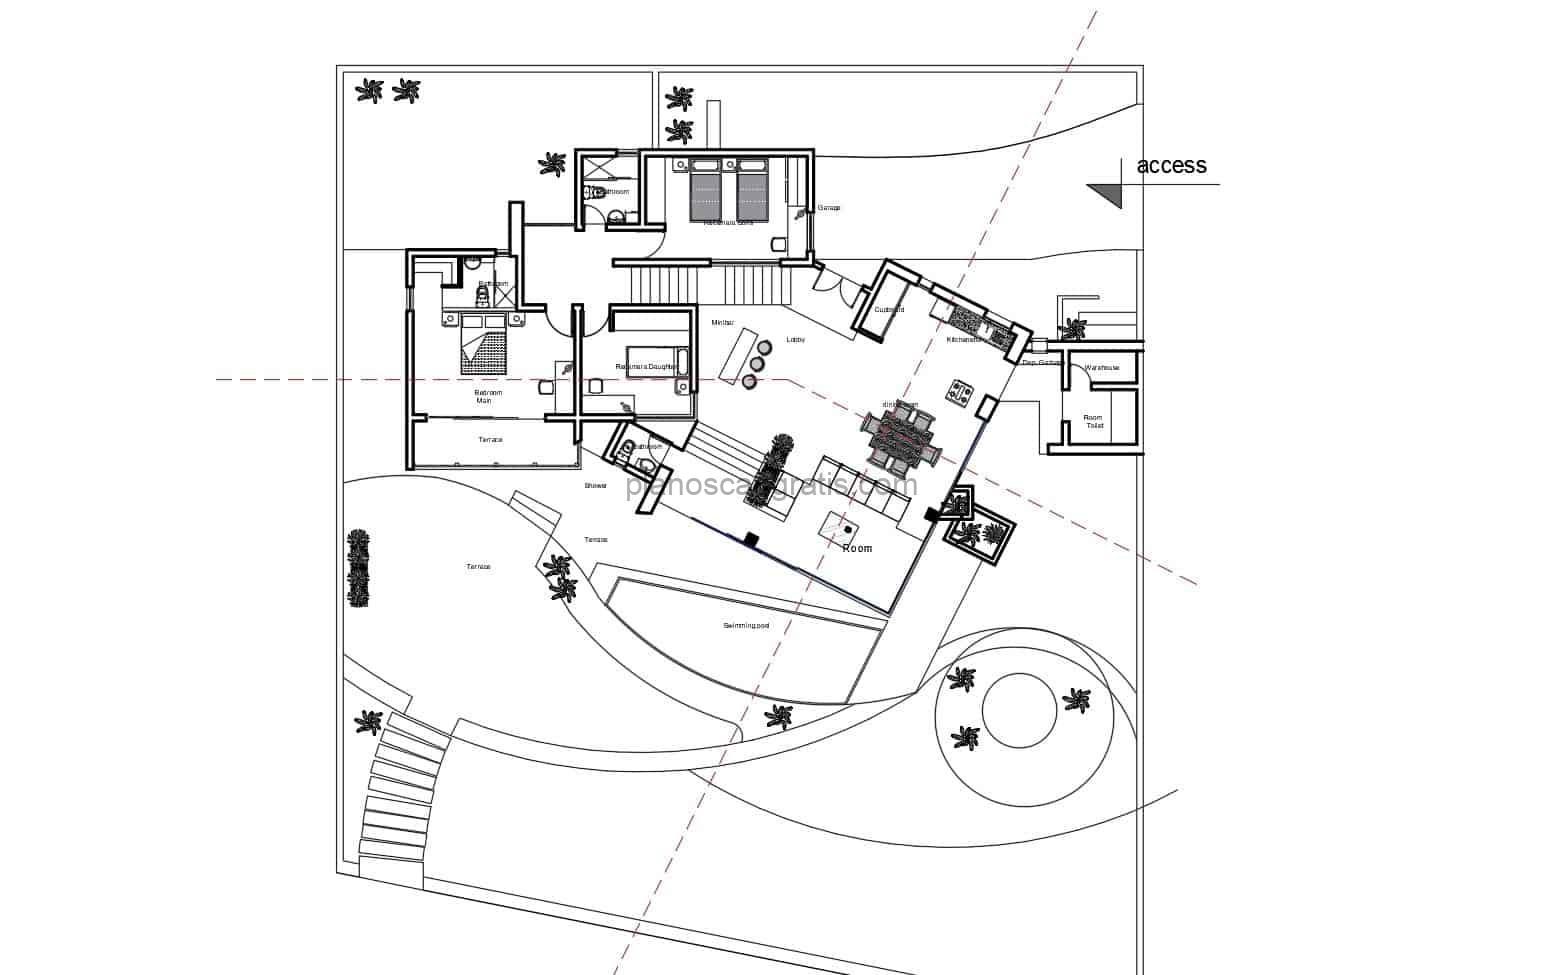 Diseño de casa moderna con dos habitaciones en colina de terreno inclinado, espacios definidos con dos habitaciones, sala estar, cocina, comedor, area exterior, planos para descarga gratis en formato DWG de AutoCAD, planos con dimensiones y dibujo 2D de casa moderna